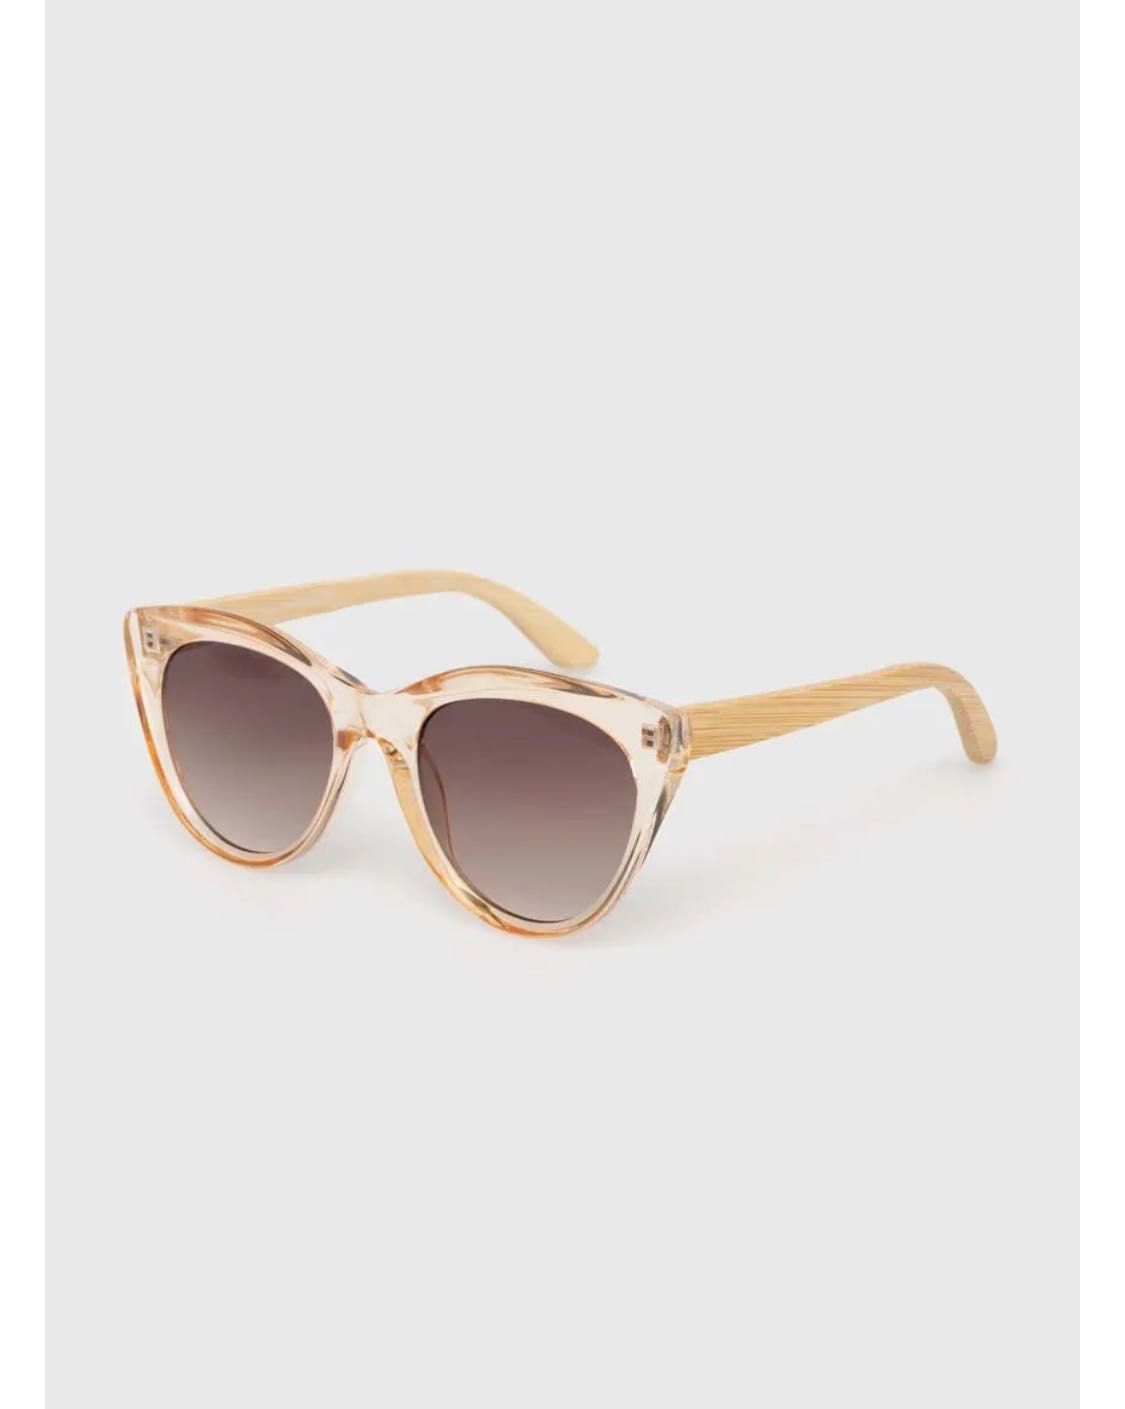 Слънчеви очила с дървена рамка